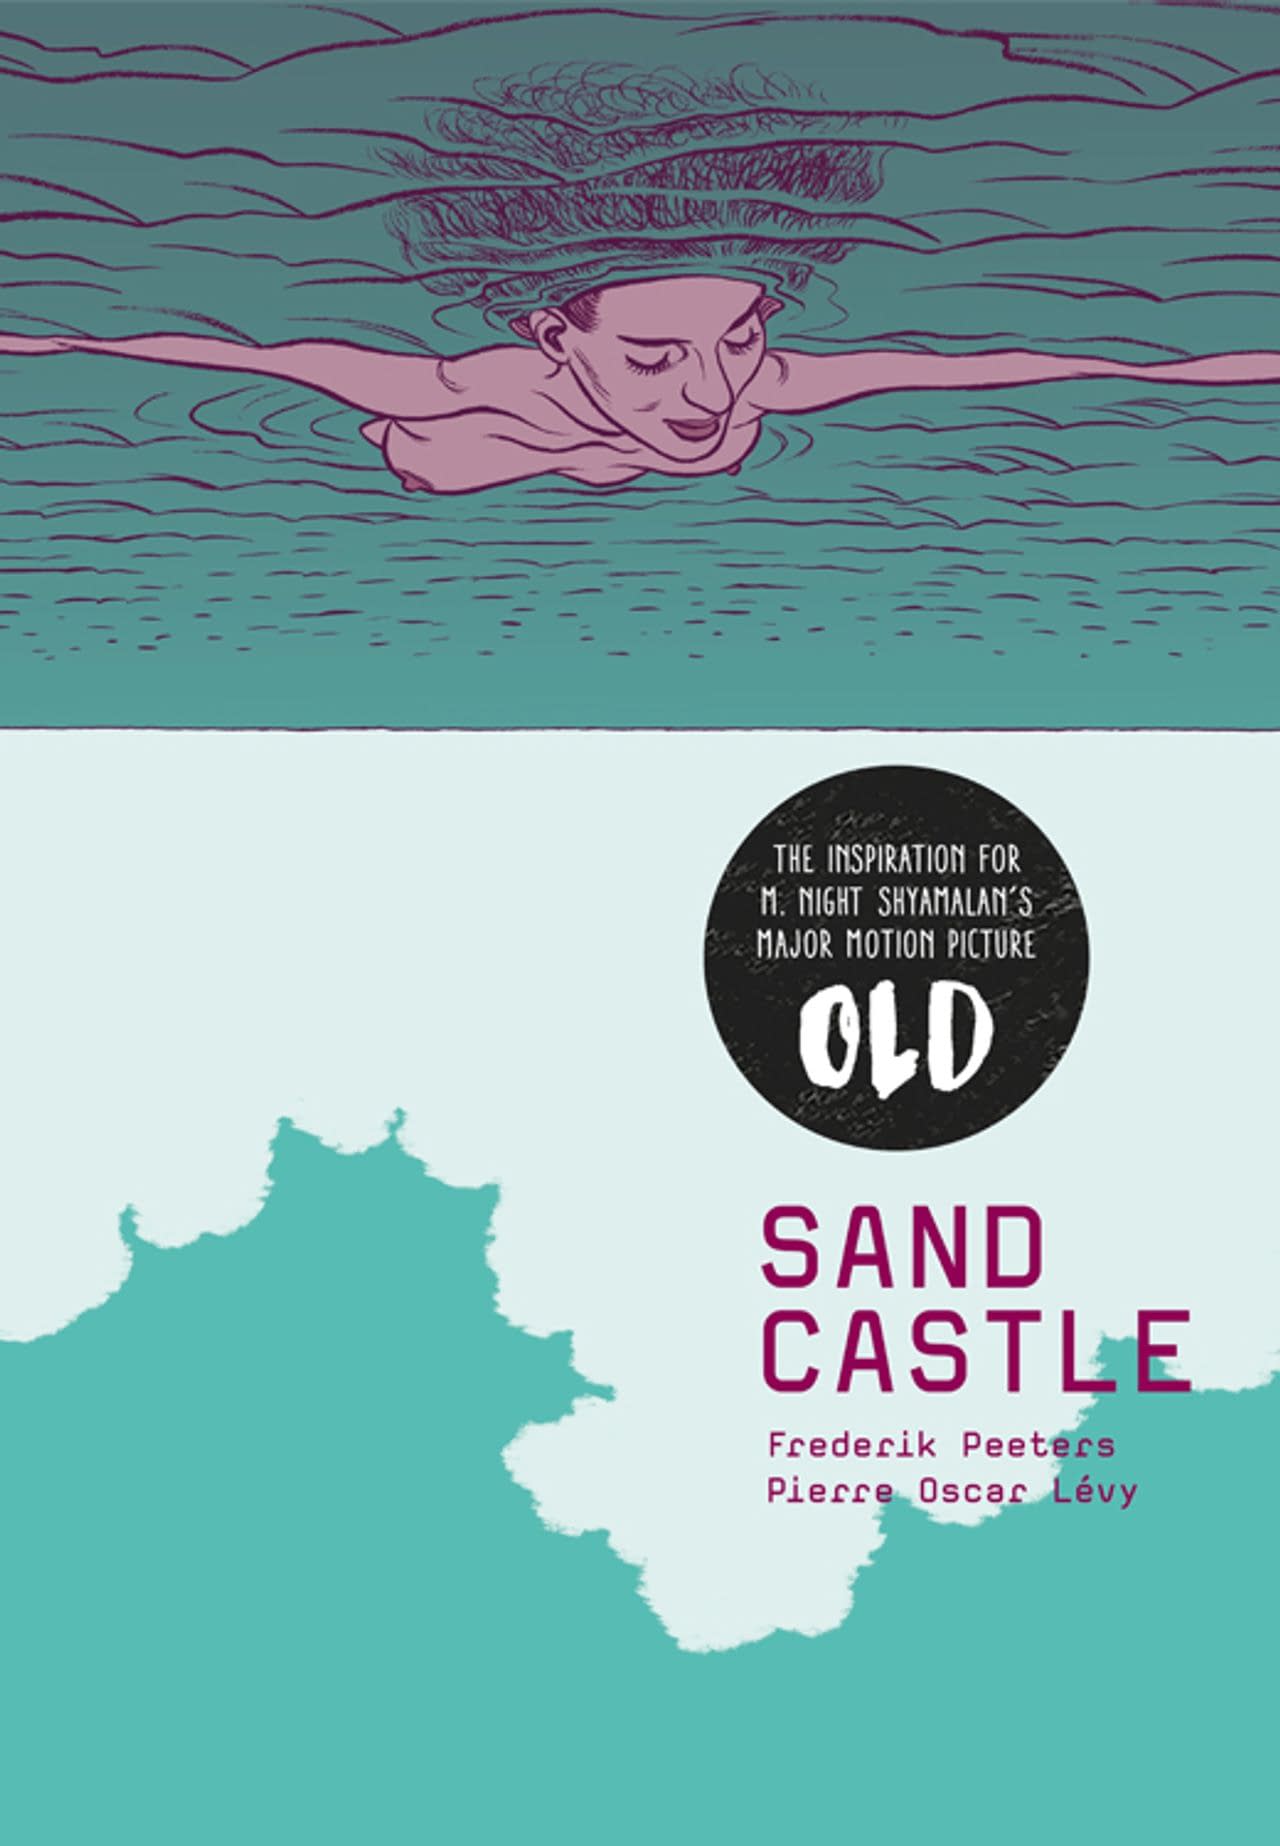 Sandcastle: Euro Graphic Novel Adapted into M. Night Shyamalan Movie